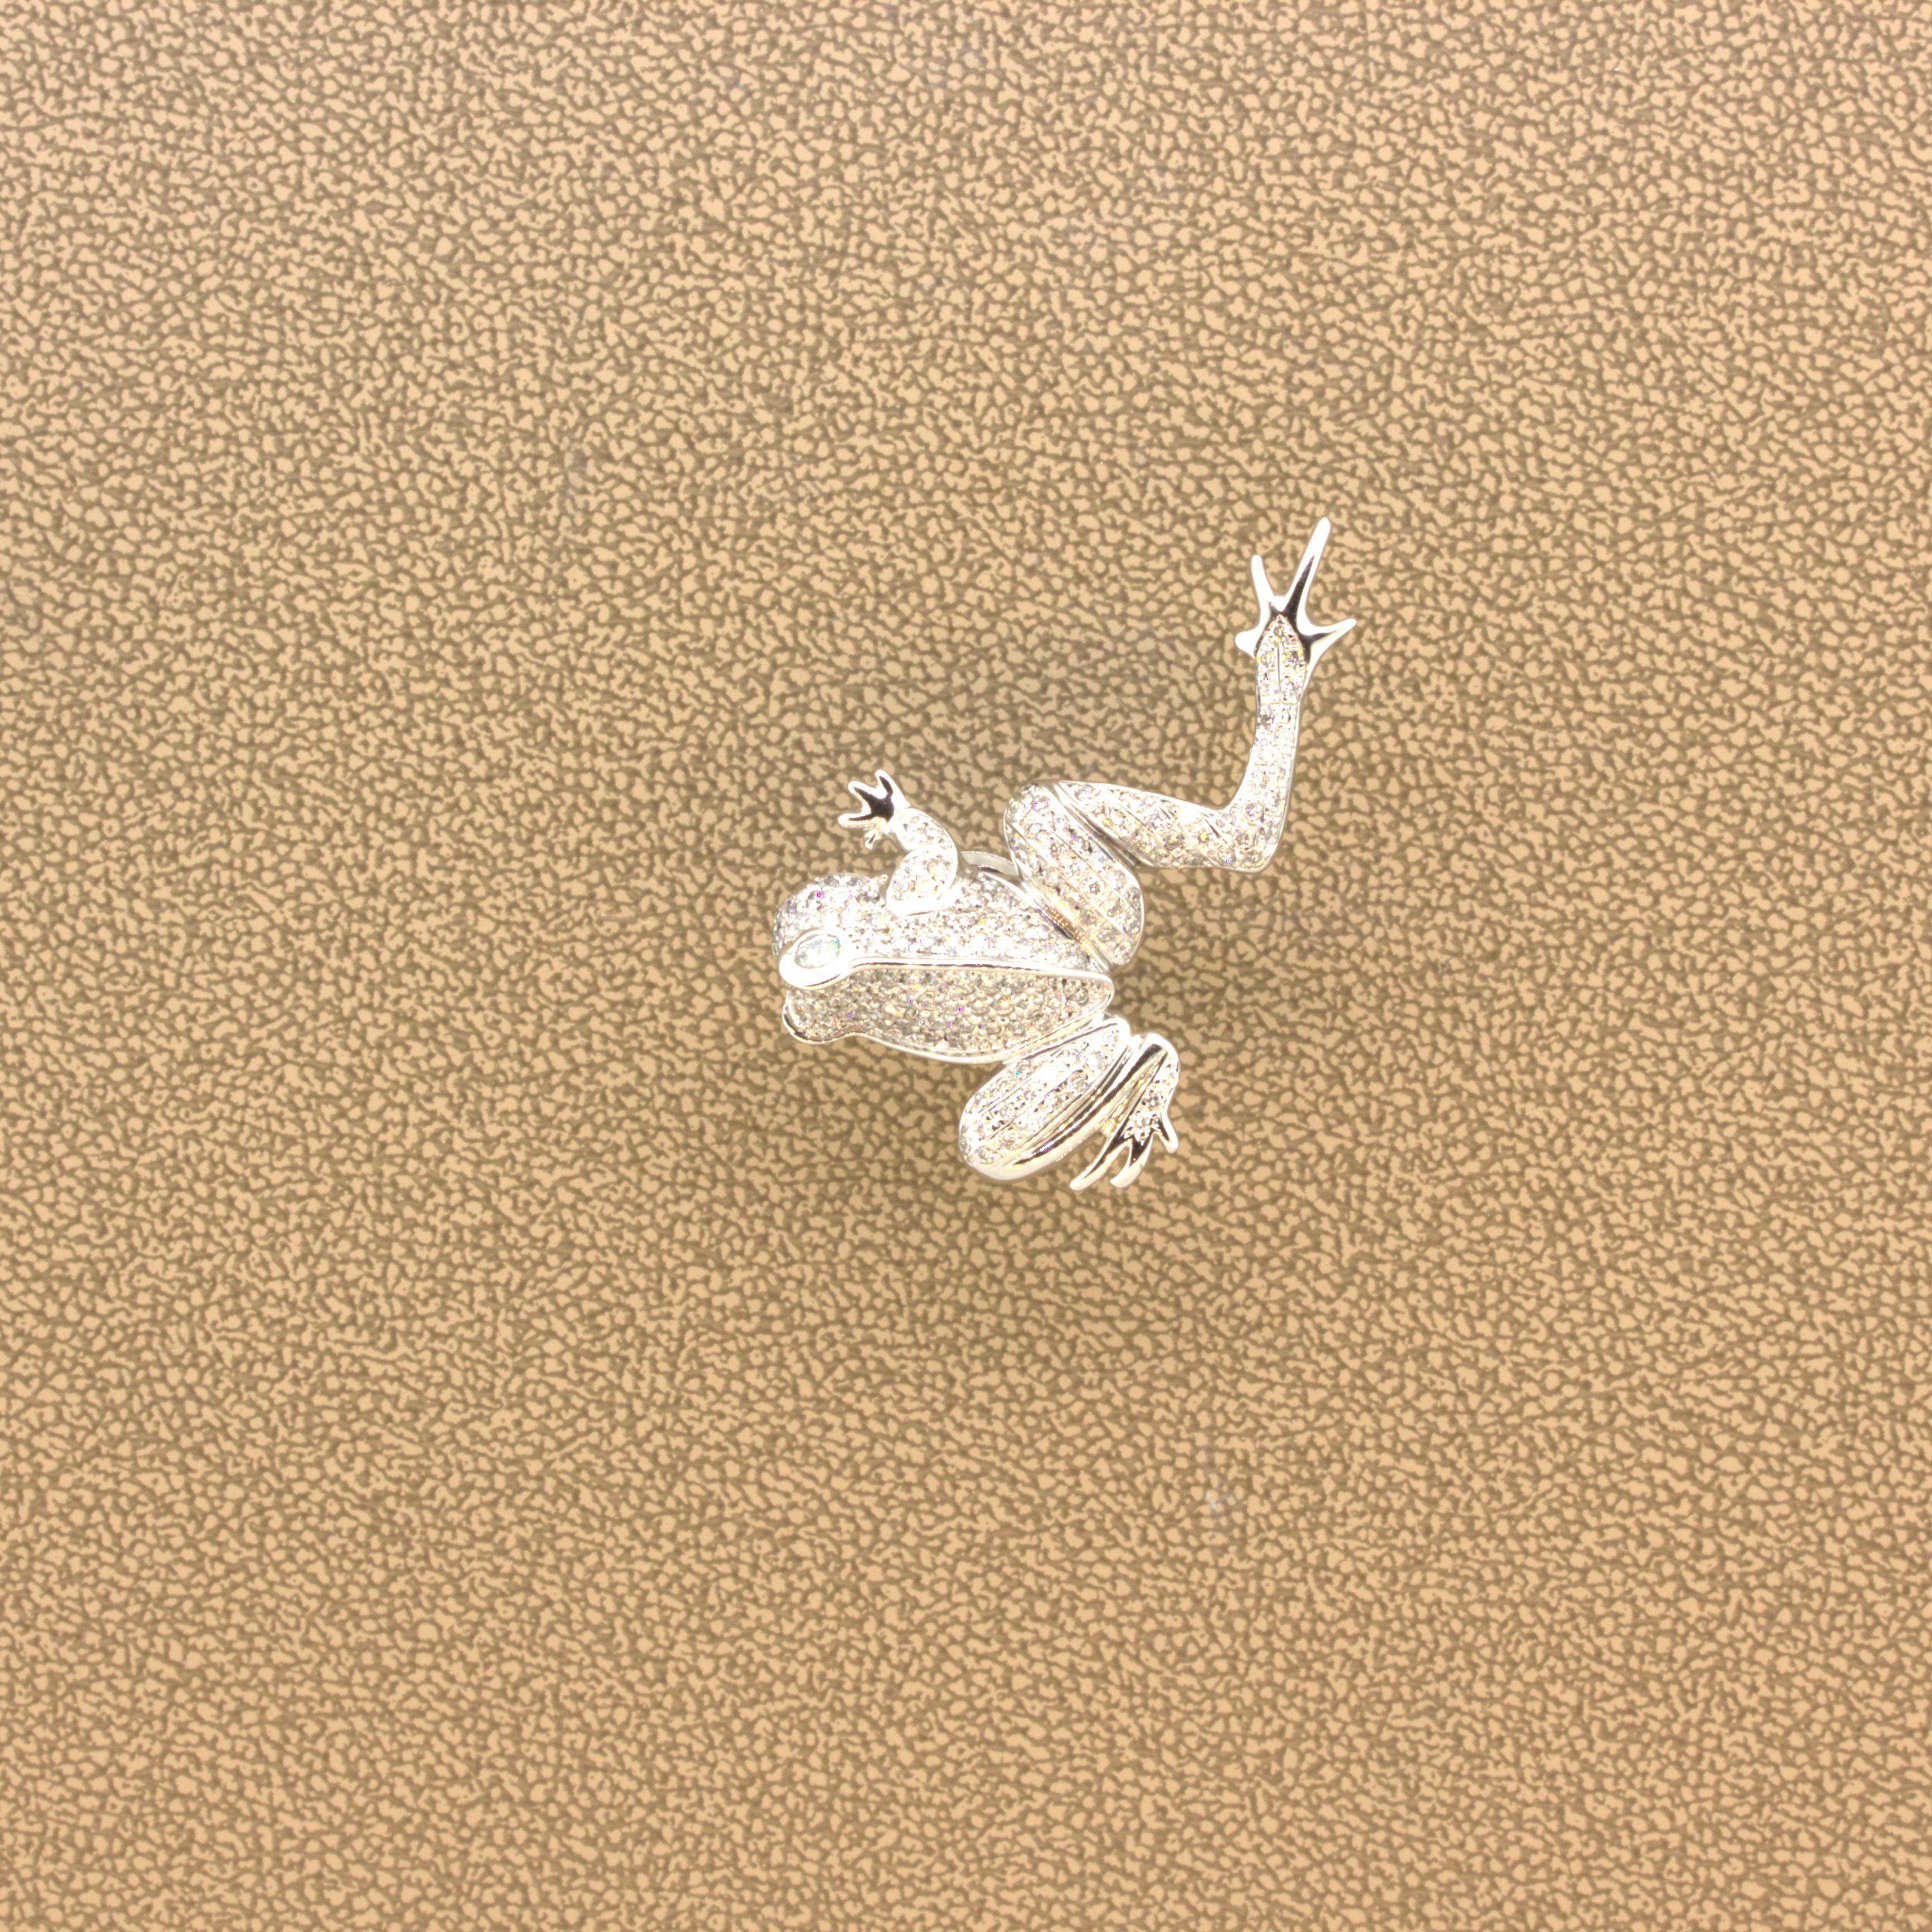 Women's Diamond 18K White Gold Frog Pin For Sale